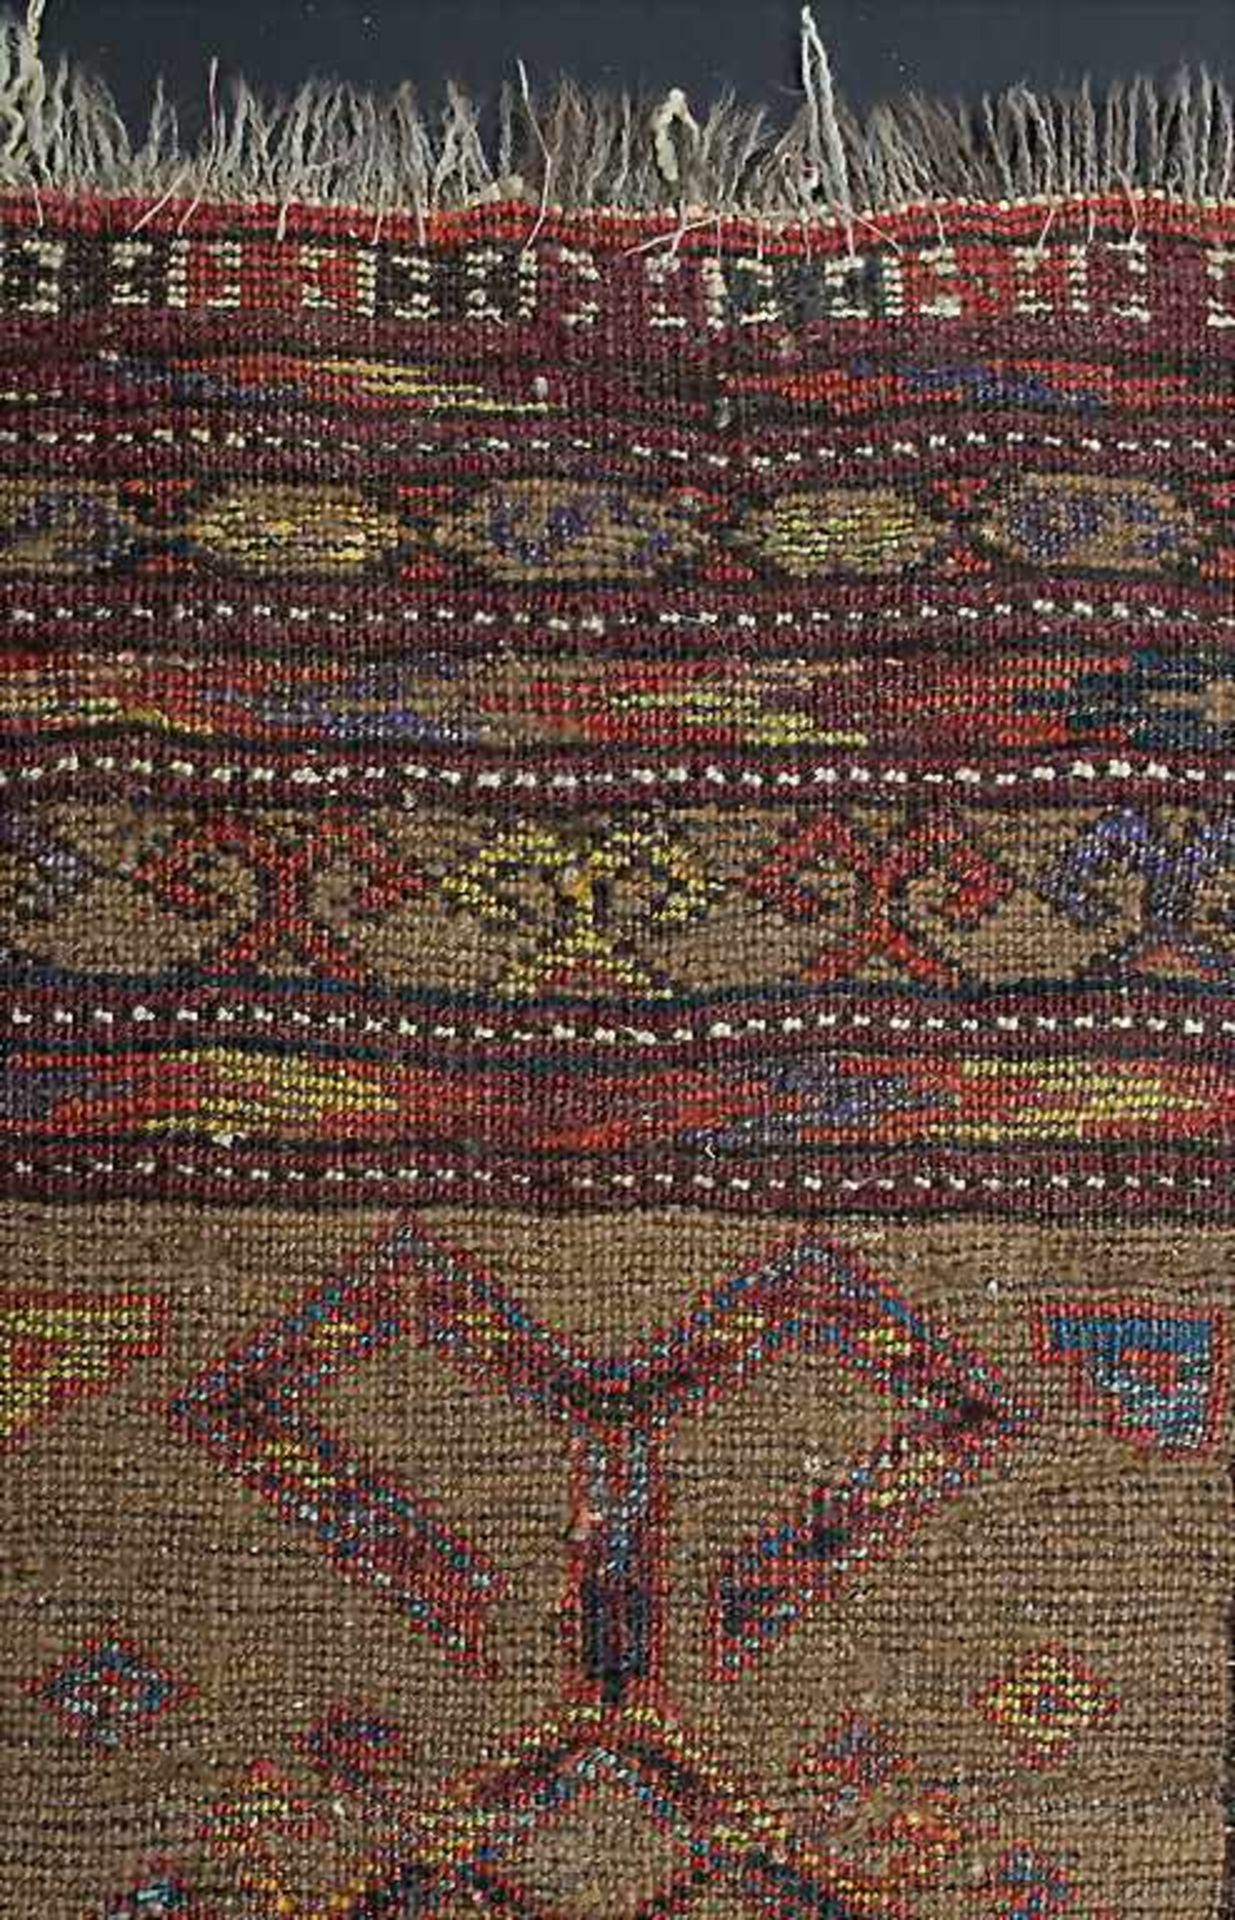 Orientteppich / An oriental carpet, wohl TurkmeneMaterial: Wolle auf Wolle, Maße: 74 x 98 cm, - Bild 4 aus 4